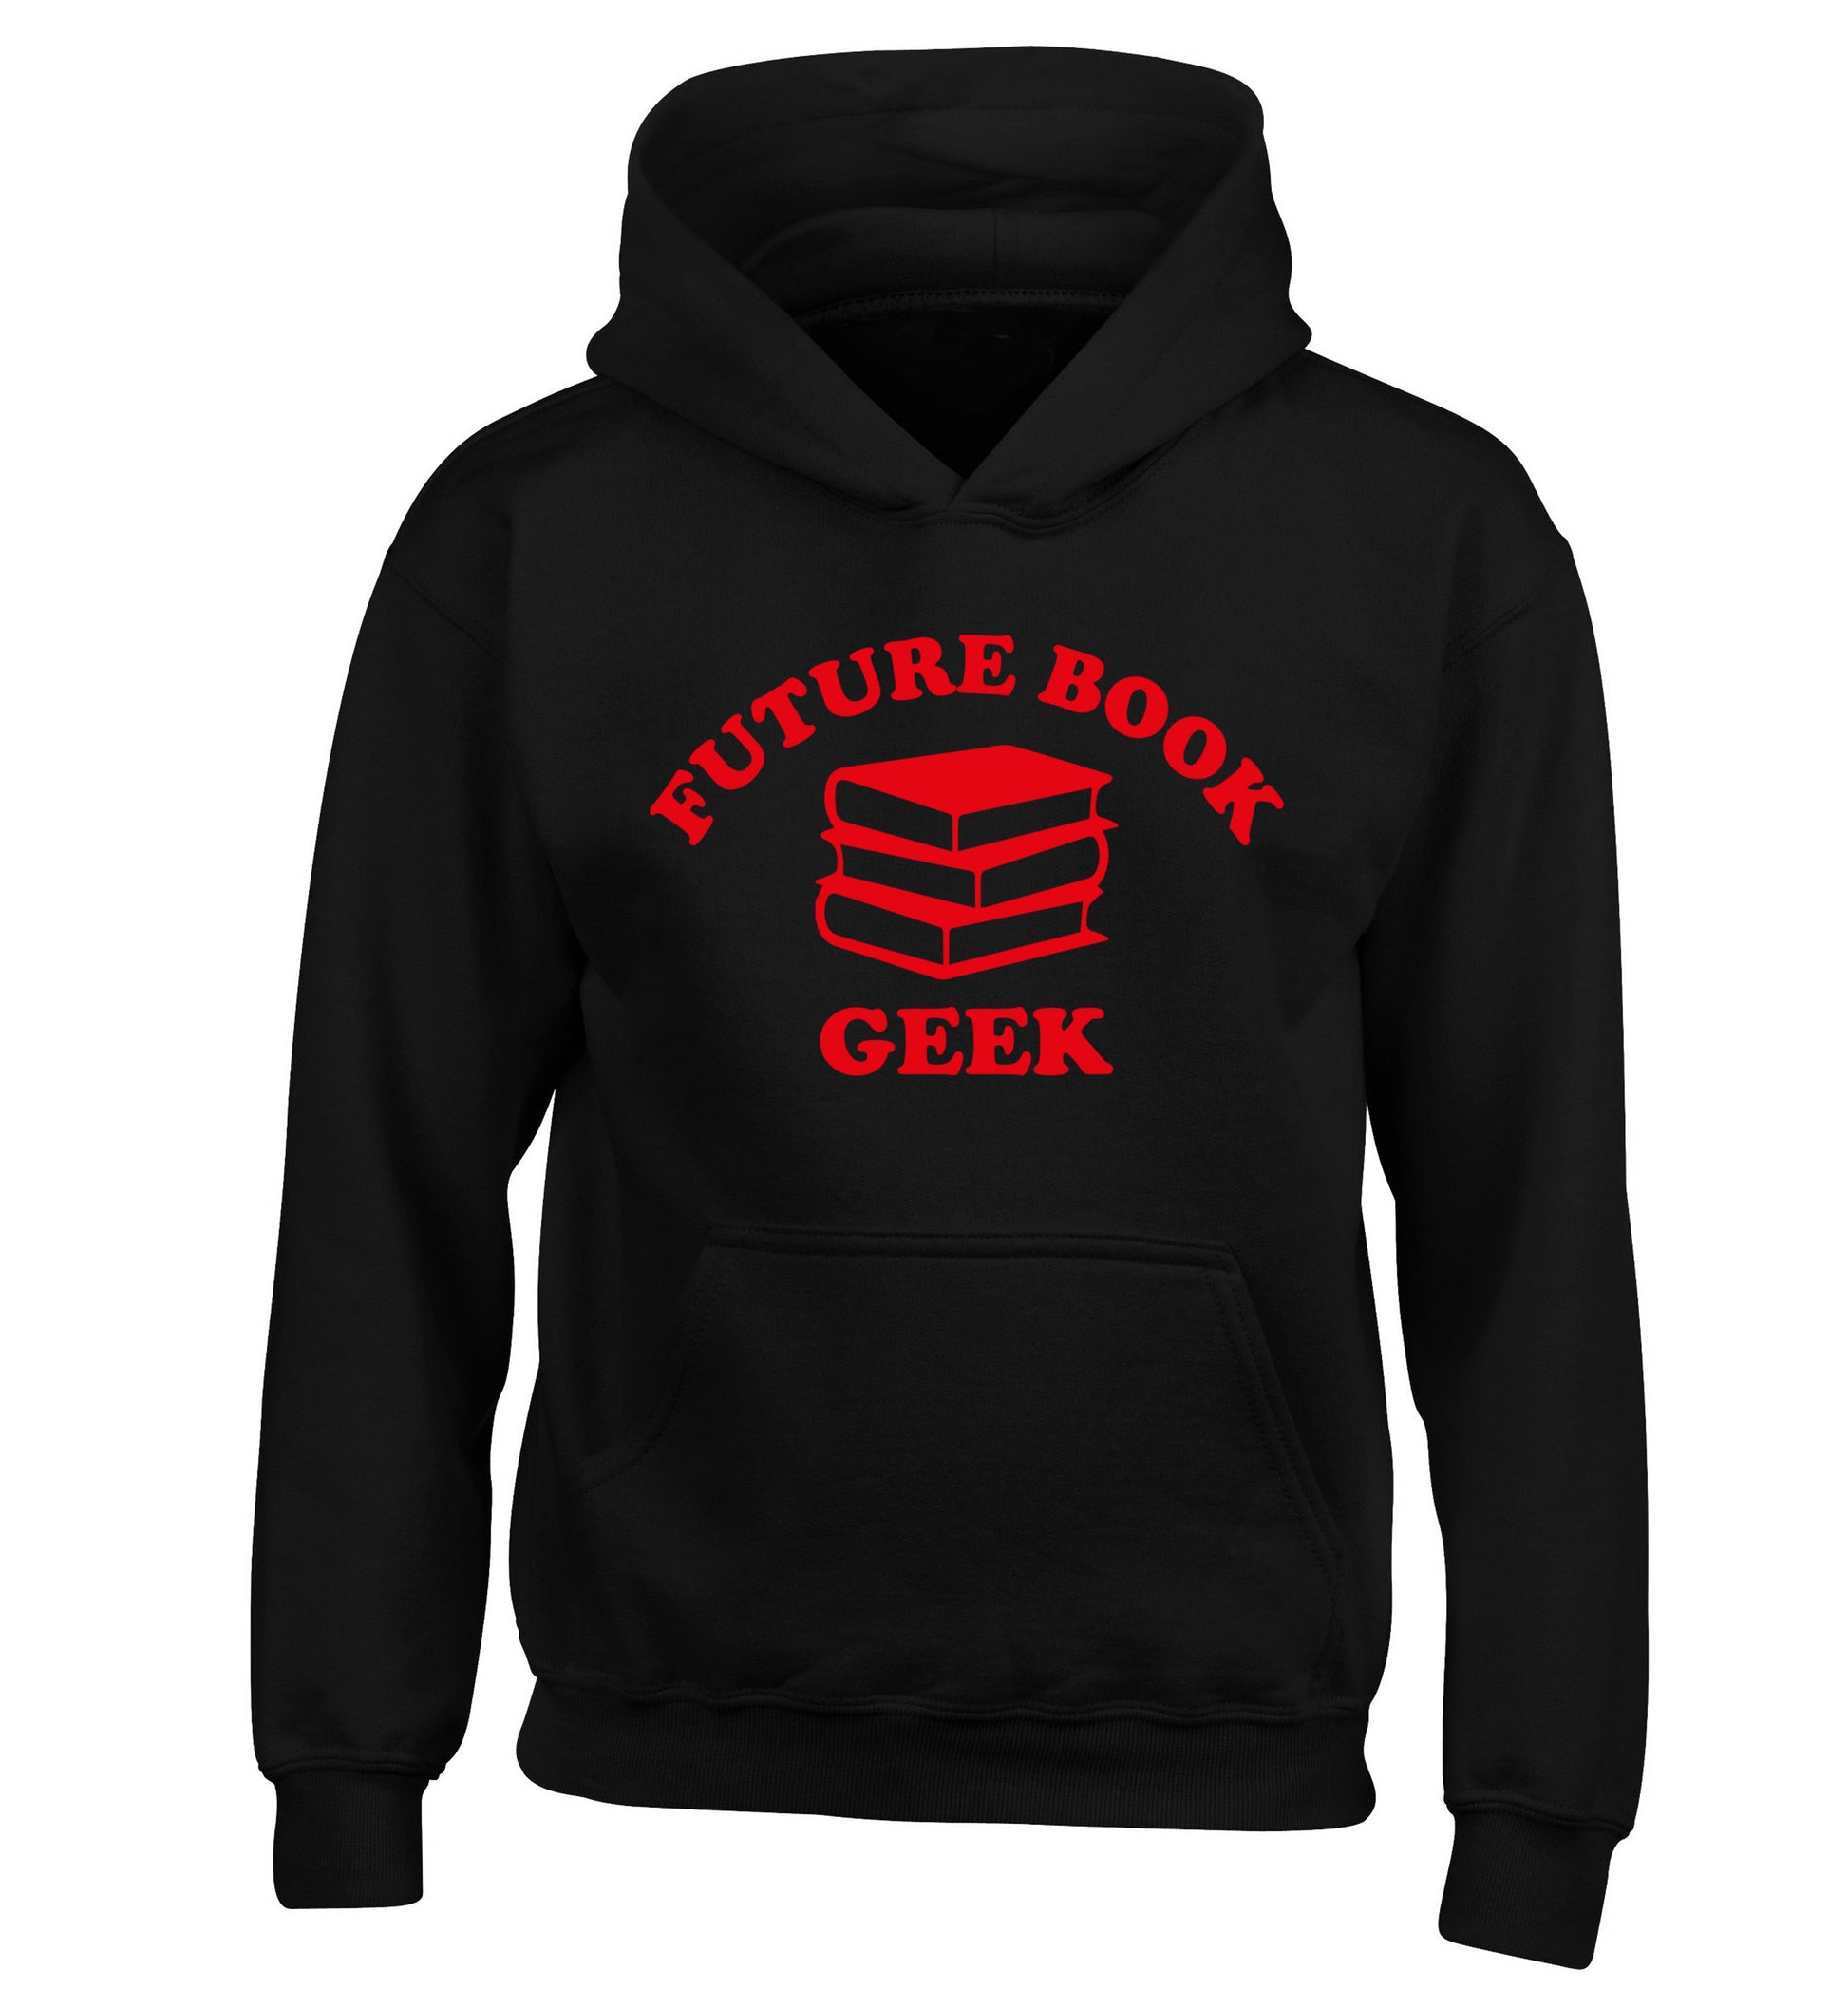 Future book geek children's black hoodie 12-14 Years